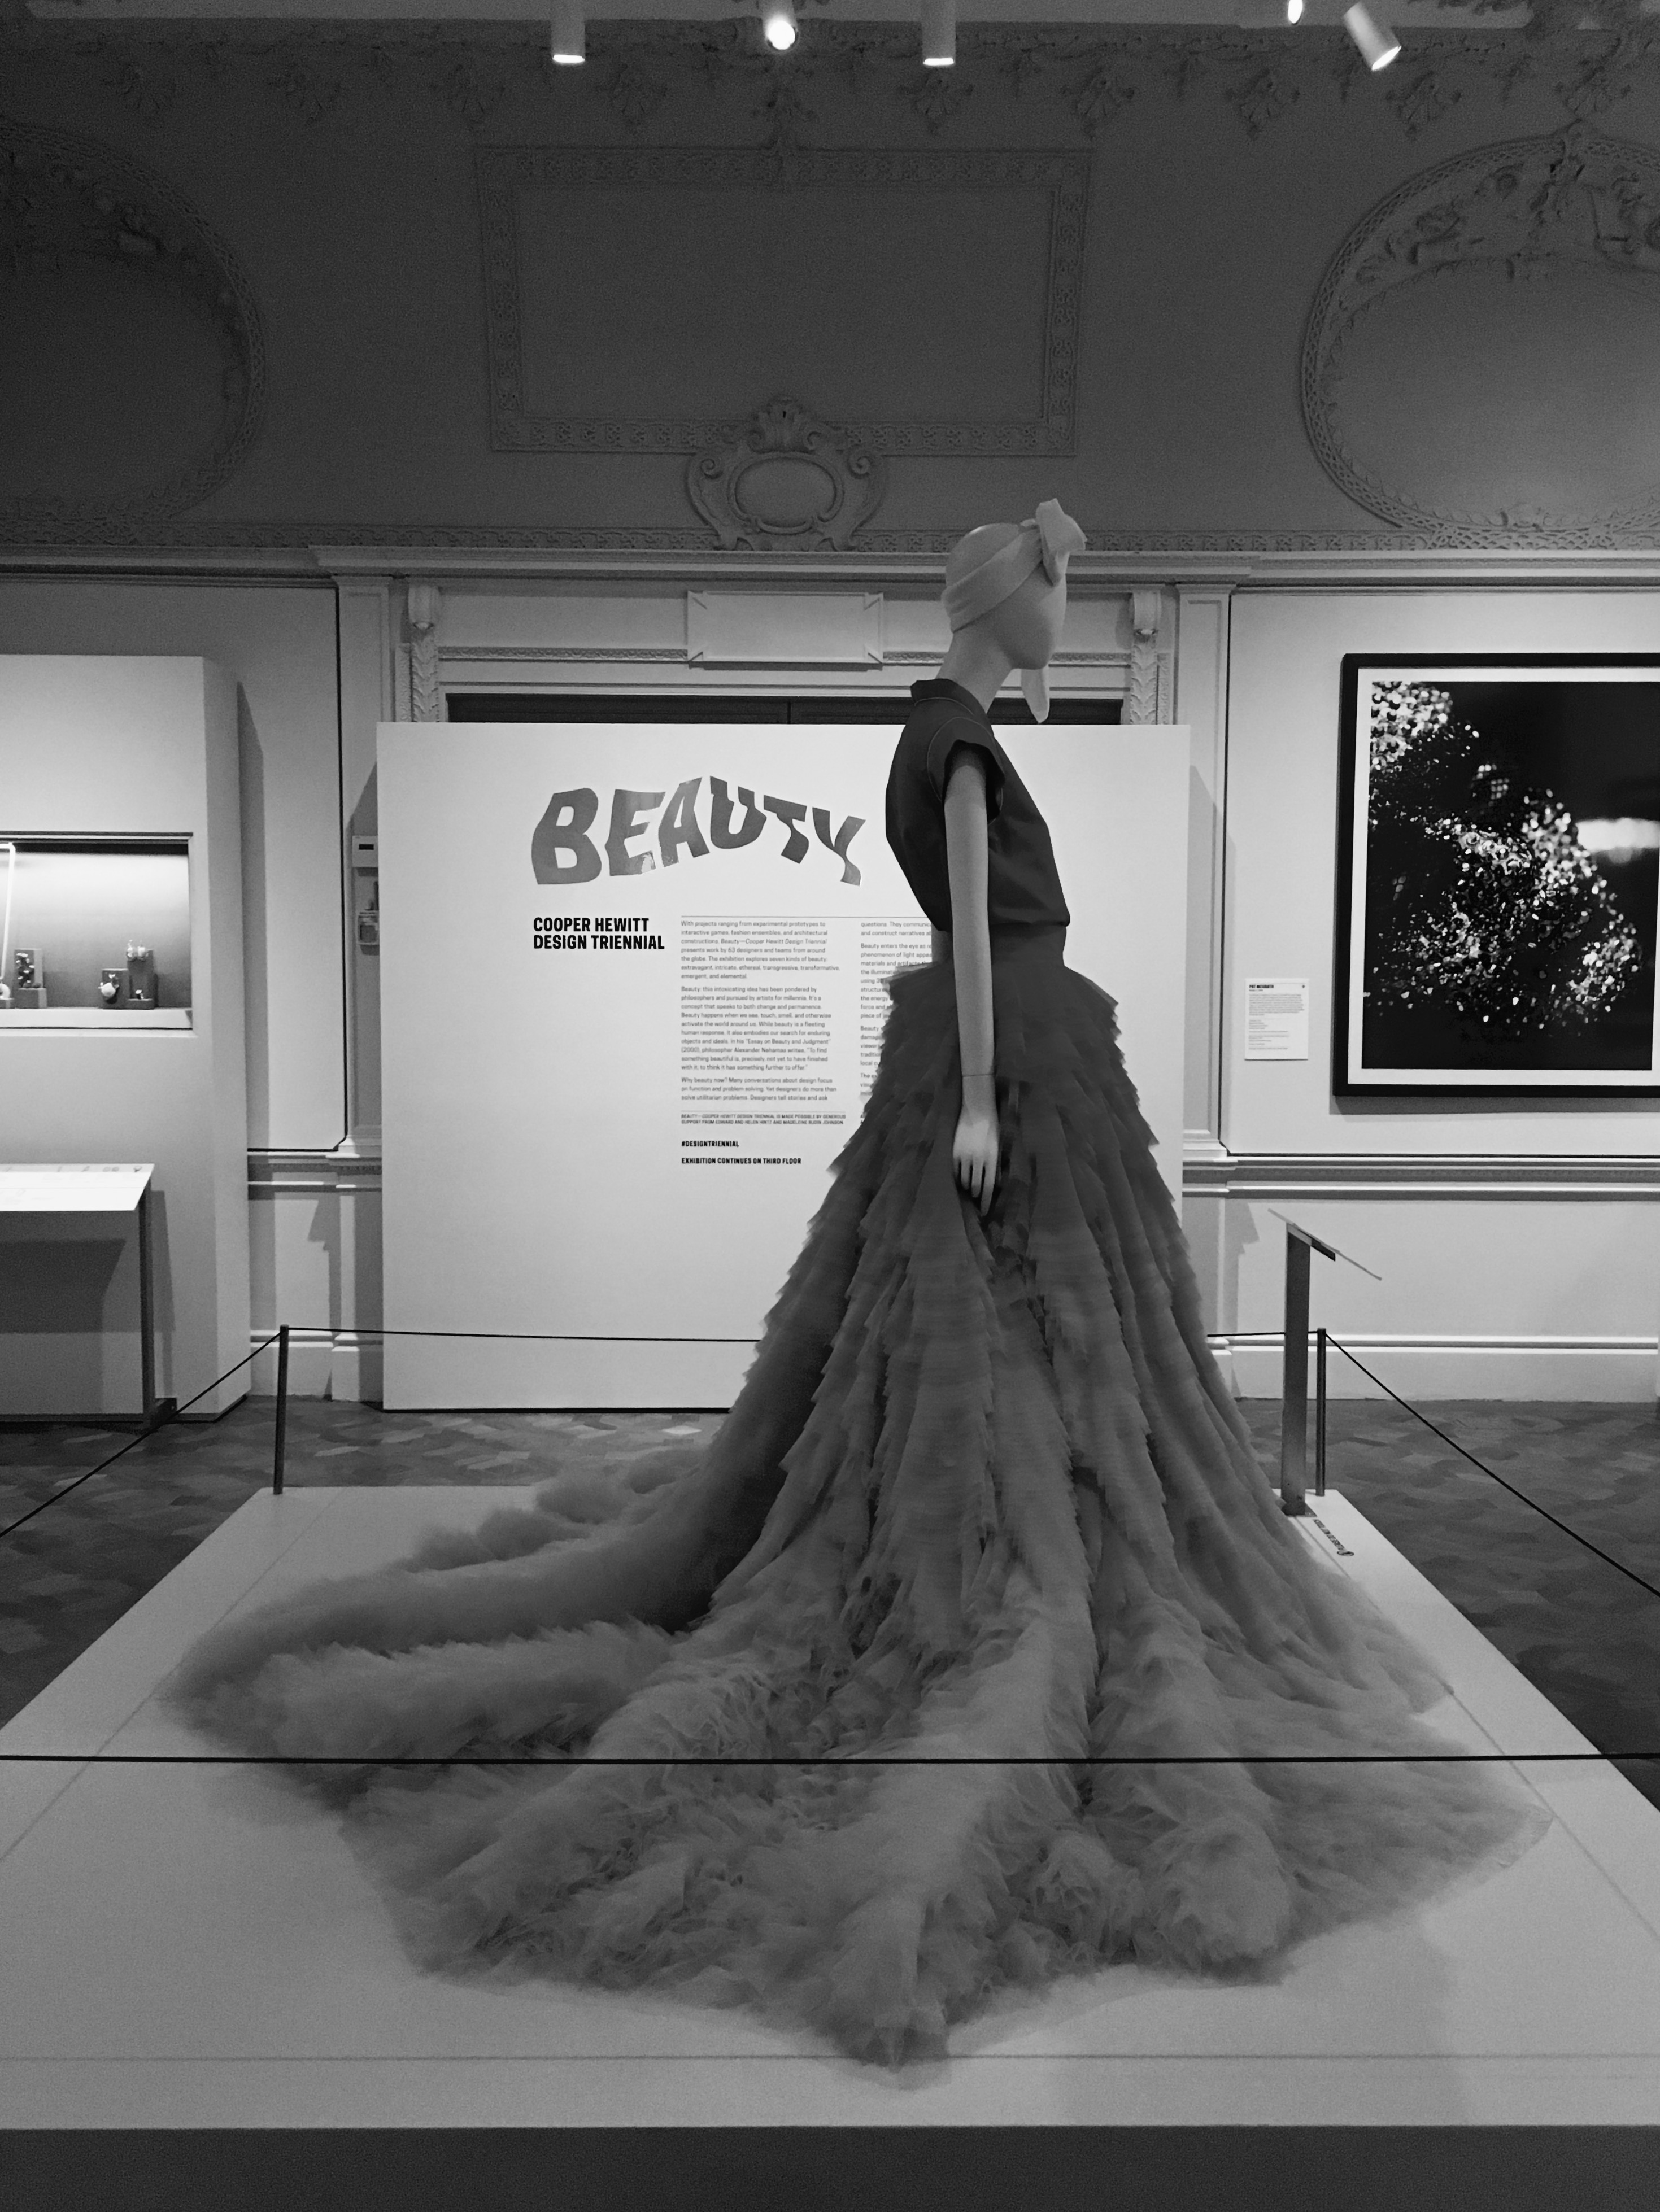 Beauty—Cooper Hewitt Design Triennial: Research Project.